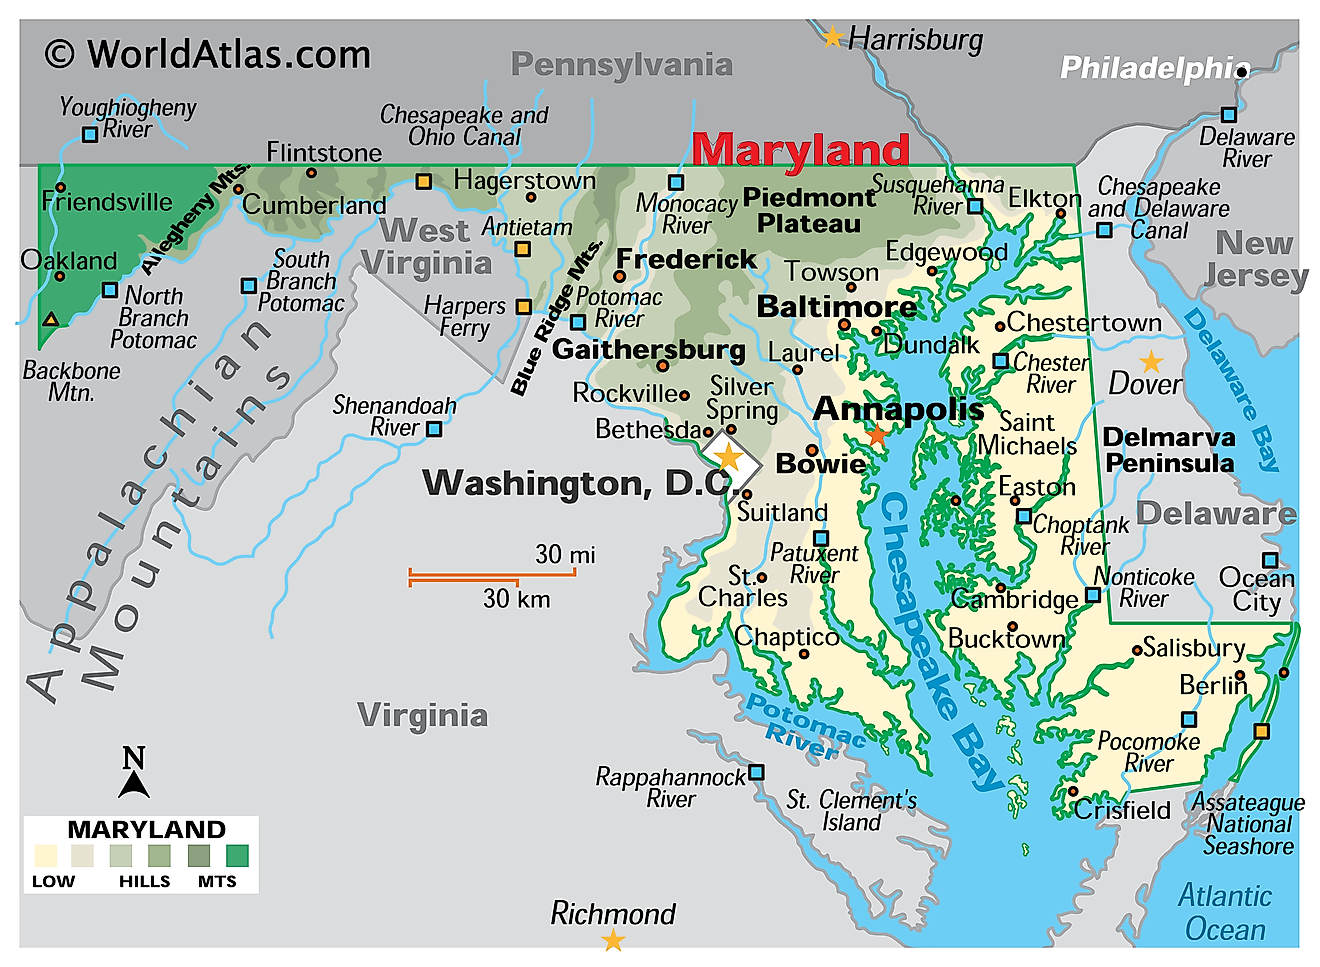 Mapa Física de Maryland. Mostra as características físicas de Maryland incluindo as suas cadeias montanhosas, principais rios, a Península de Delmarva e a Baía de Chesapeake.